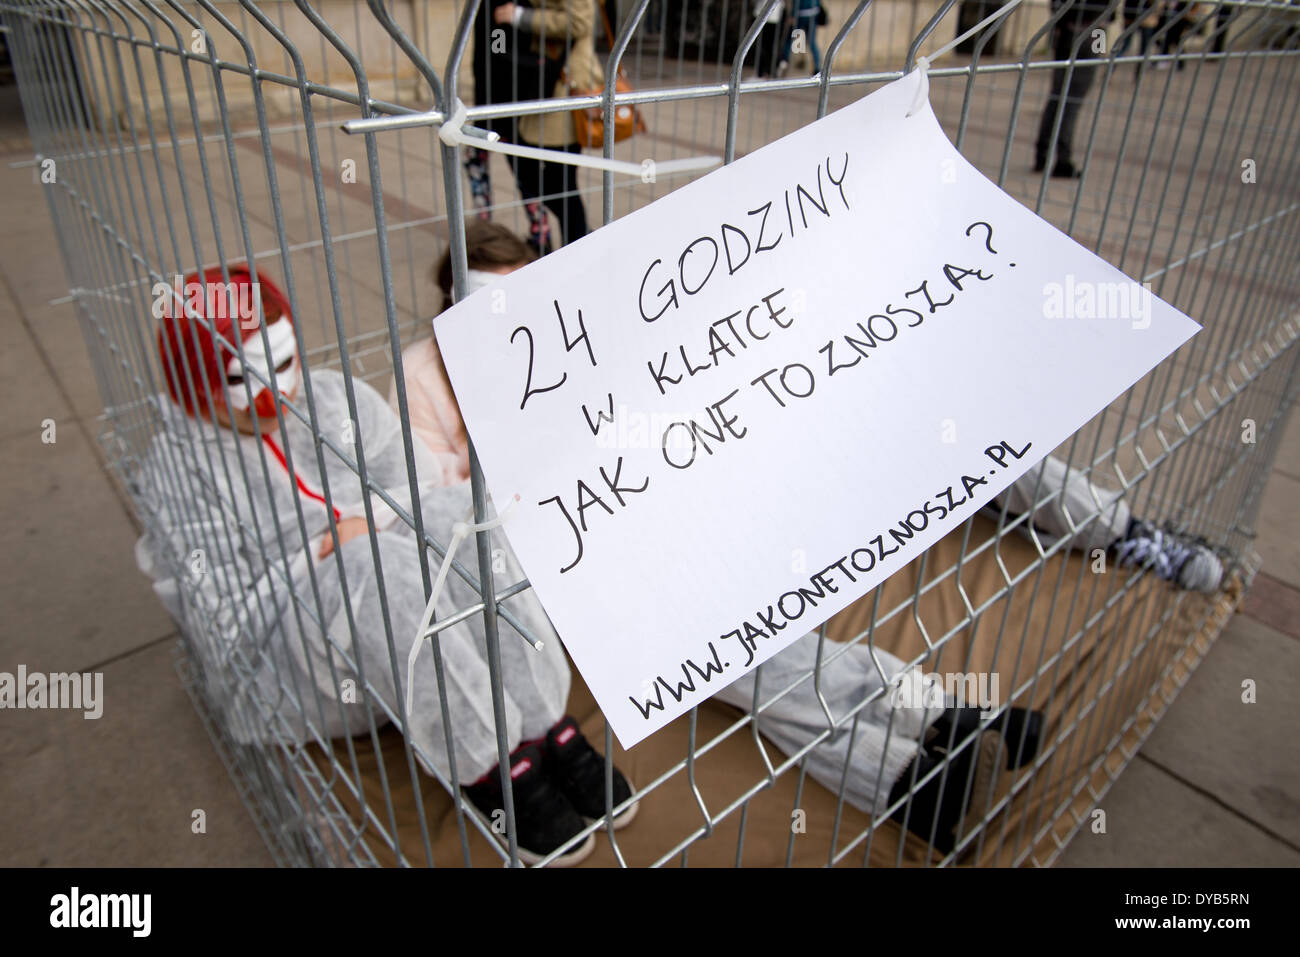 Warschau, Polen. 12. April 2014. Aktivisten von "Open Käfige" Organisation Proteste gegen Legebatterien Geflügel Landwirtschaft am 12. April in Warschau. Vier Personen wurden in Käfig für 24 Stunden gesperrt. Stockfoto